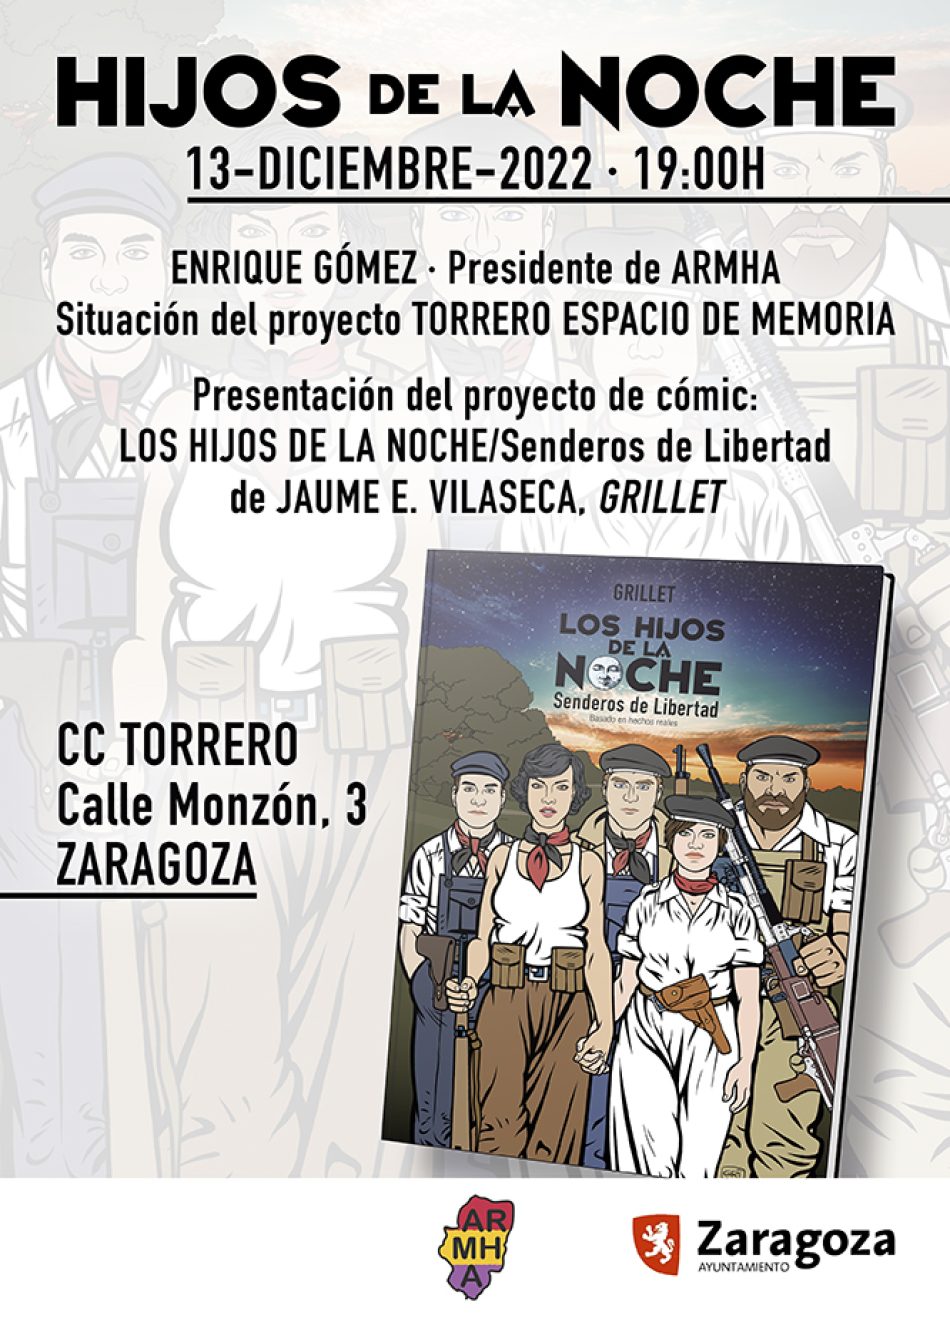 El Centro Cívico Torrero y la ARMHA presentan el cómic “Los hijos de la noche/Senderos de libertad”